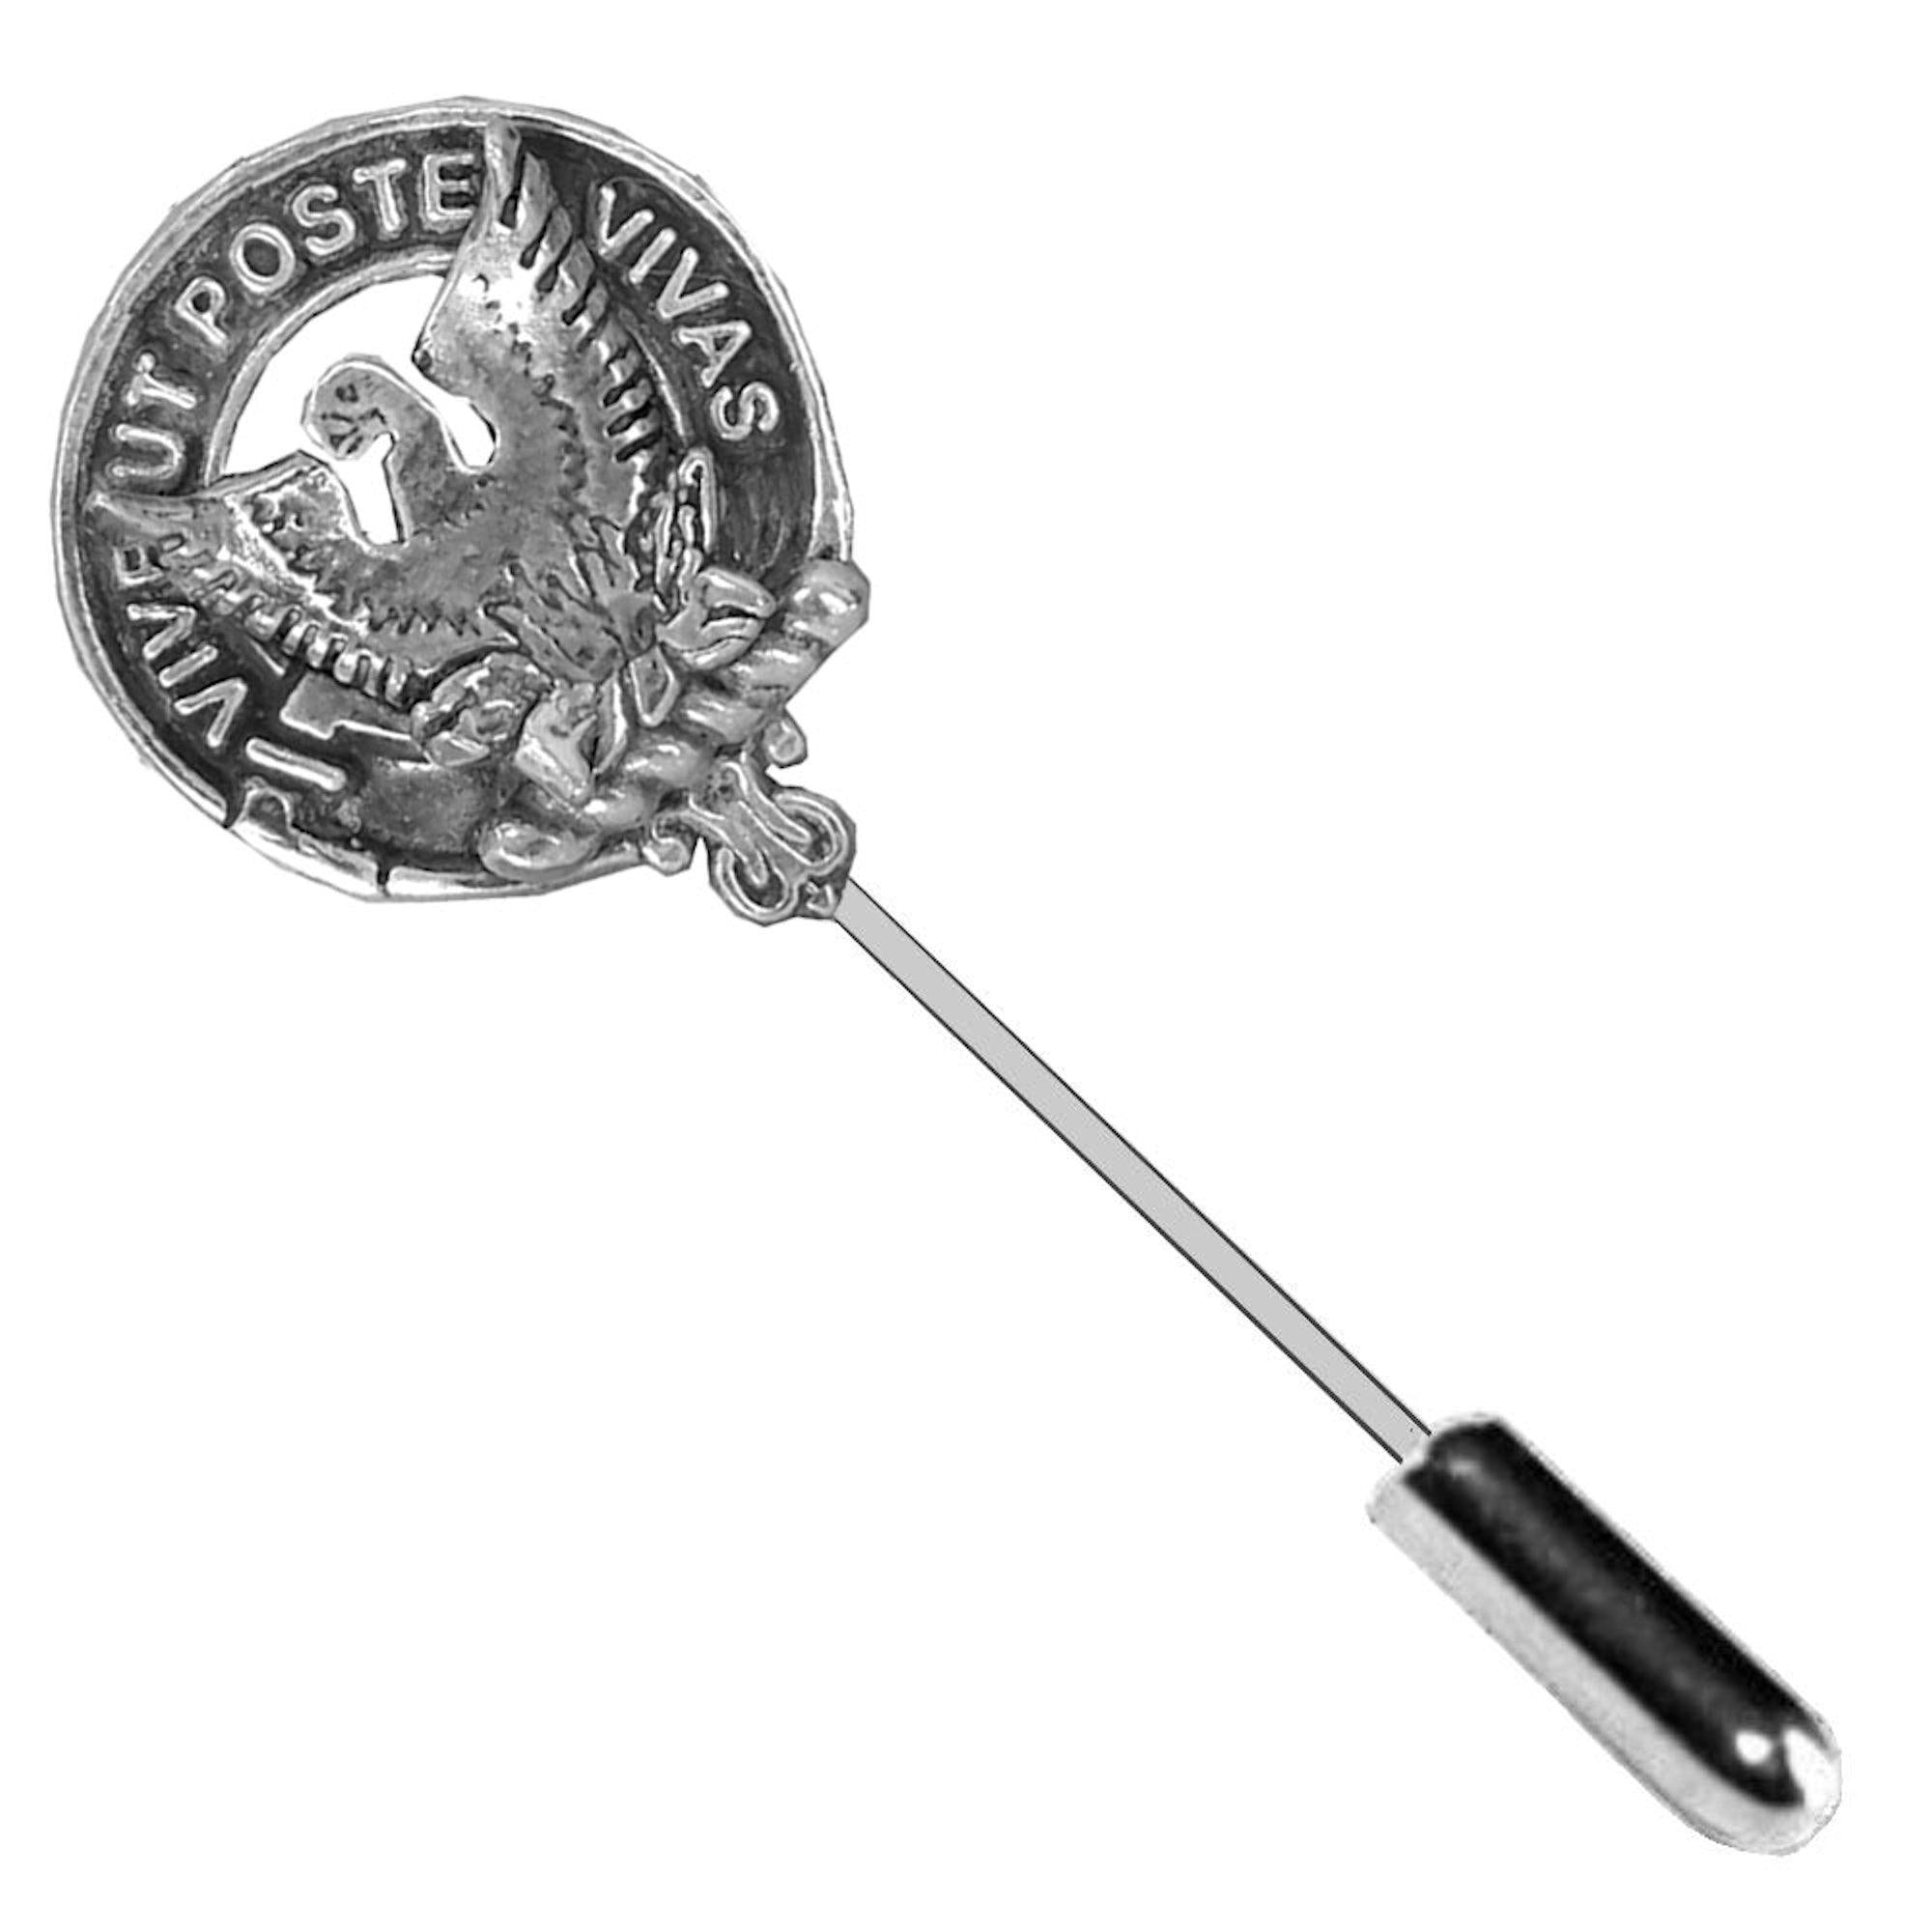 Johnston (Caskieben) Clan Crest Stick or Cravat pin, Sterling Silver